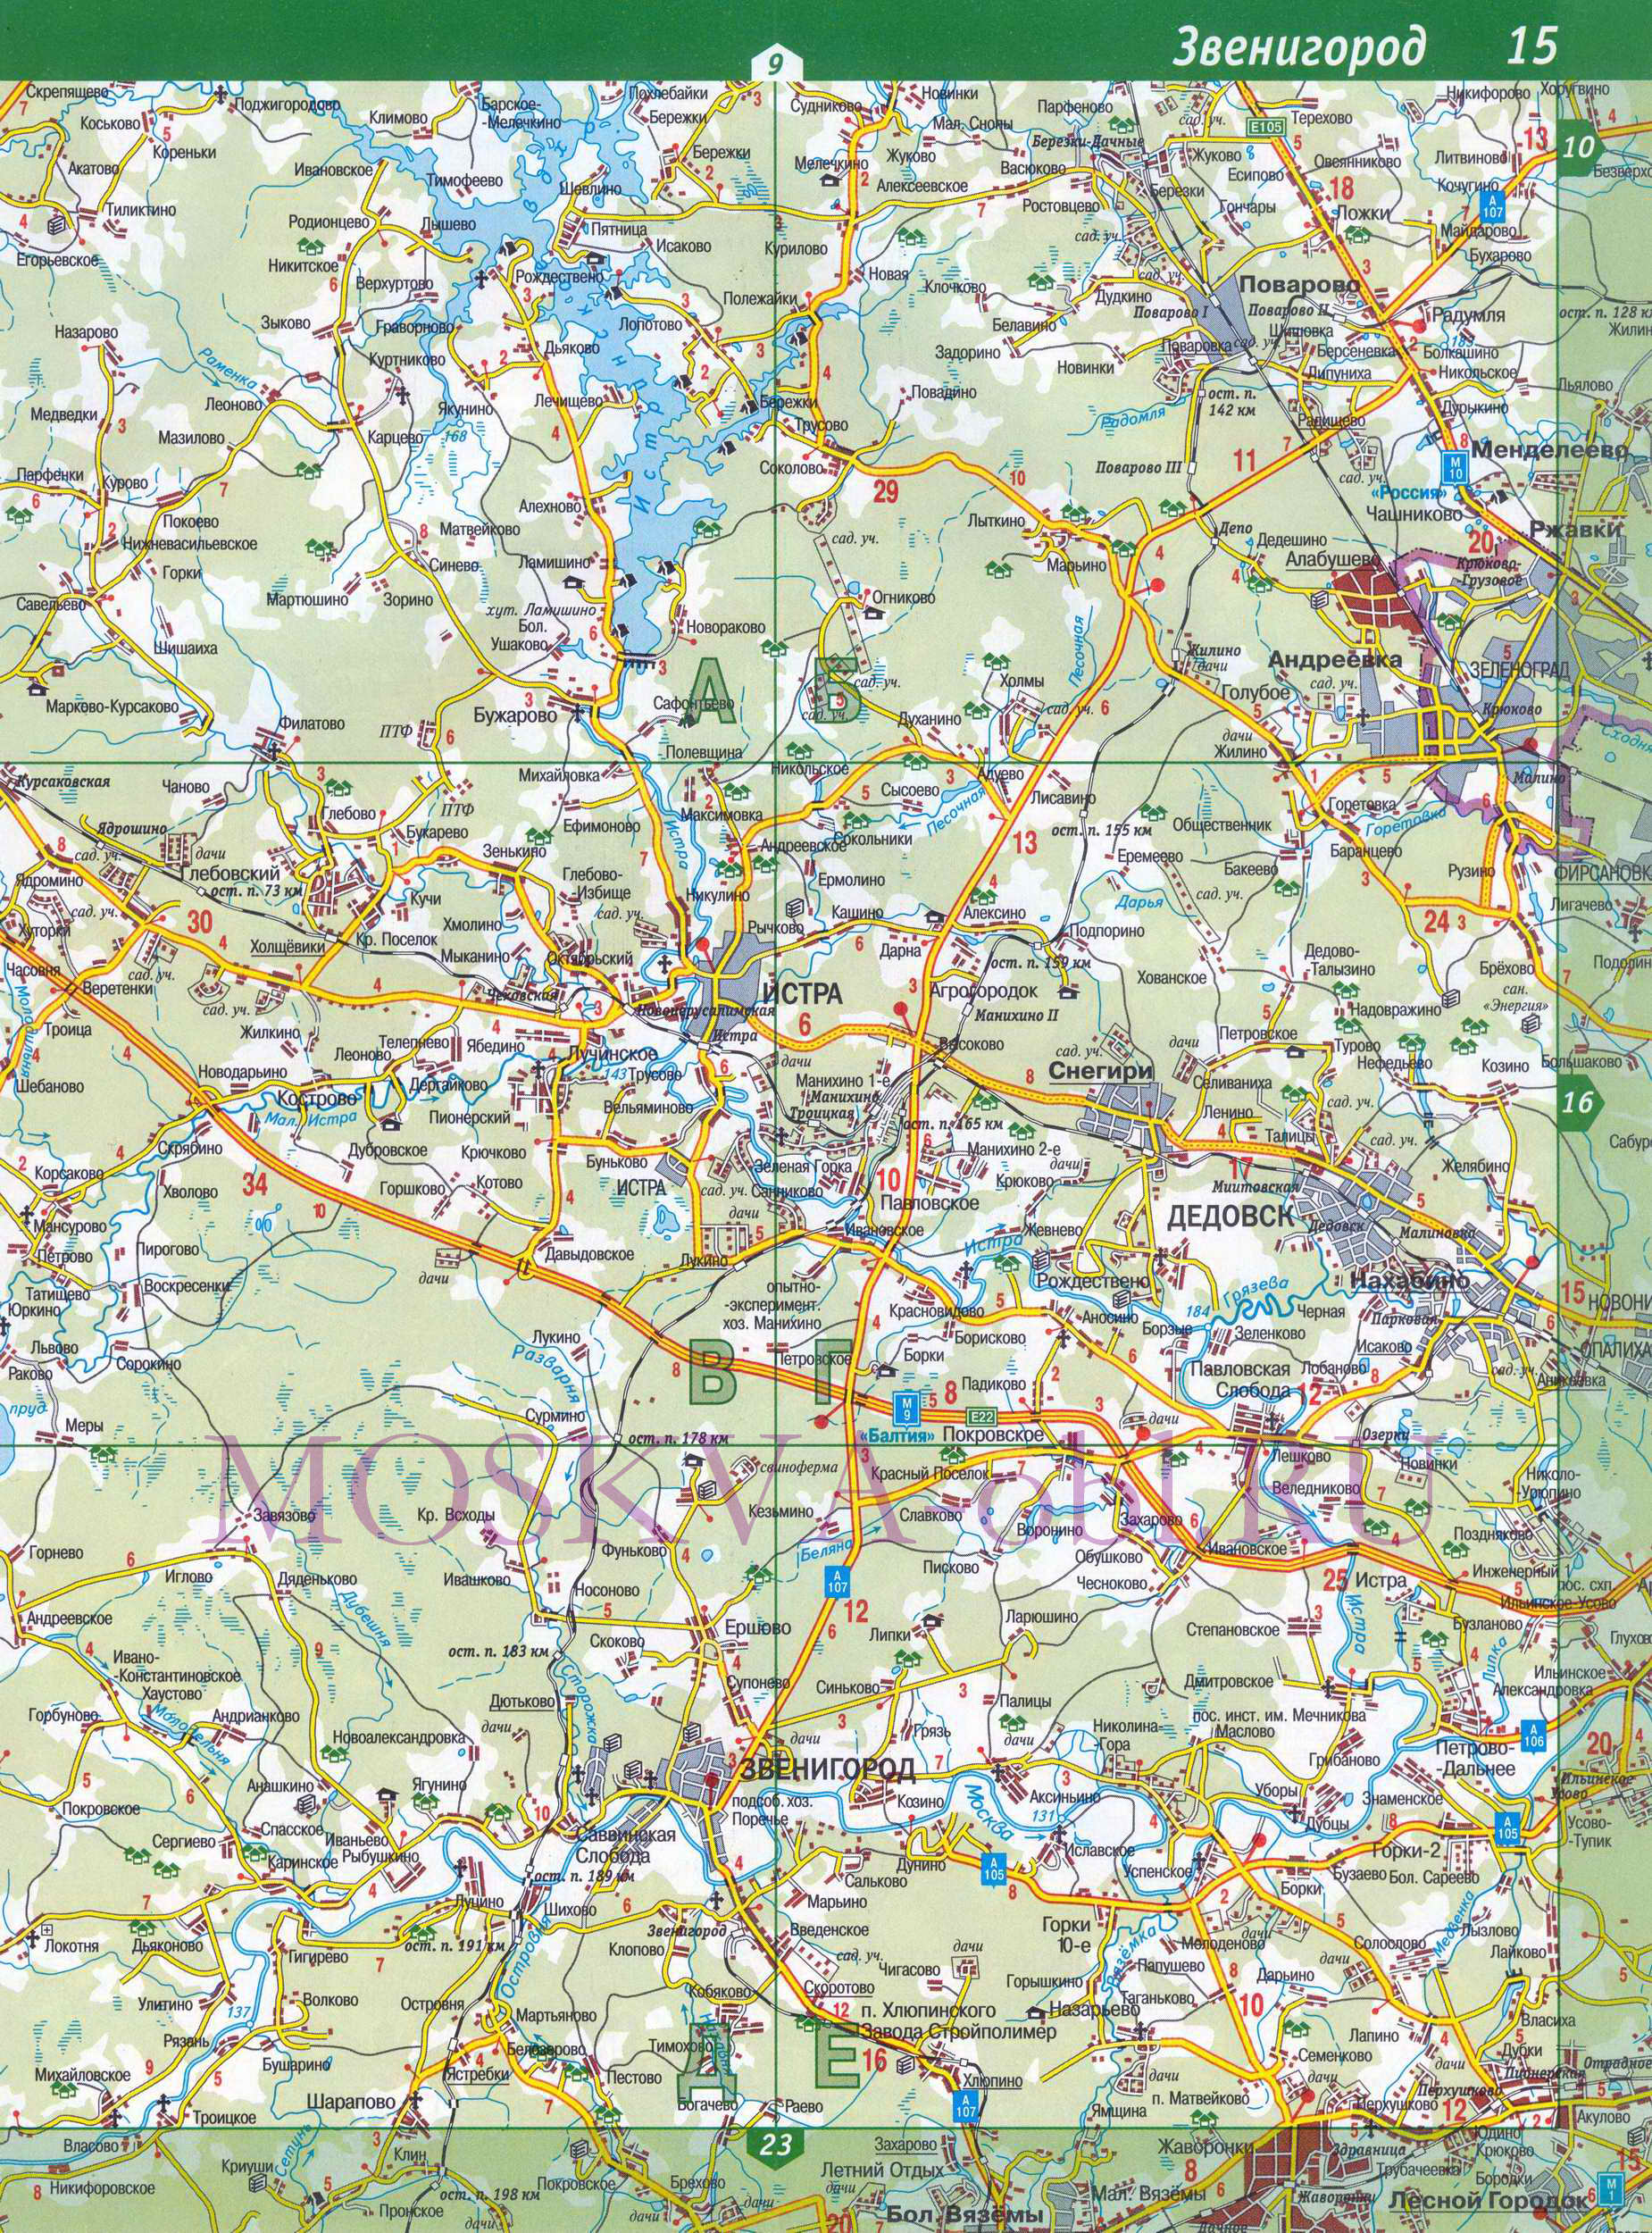 Карта Рузского района. Подробная карта Московской области - Рузский район, город Руза, B0 - 